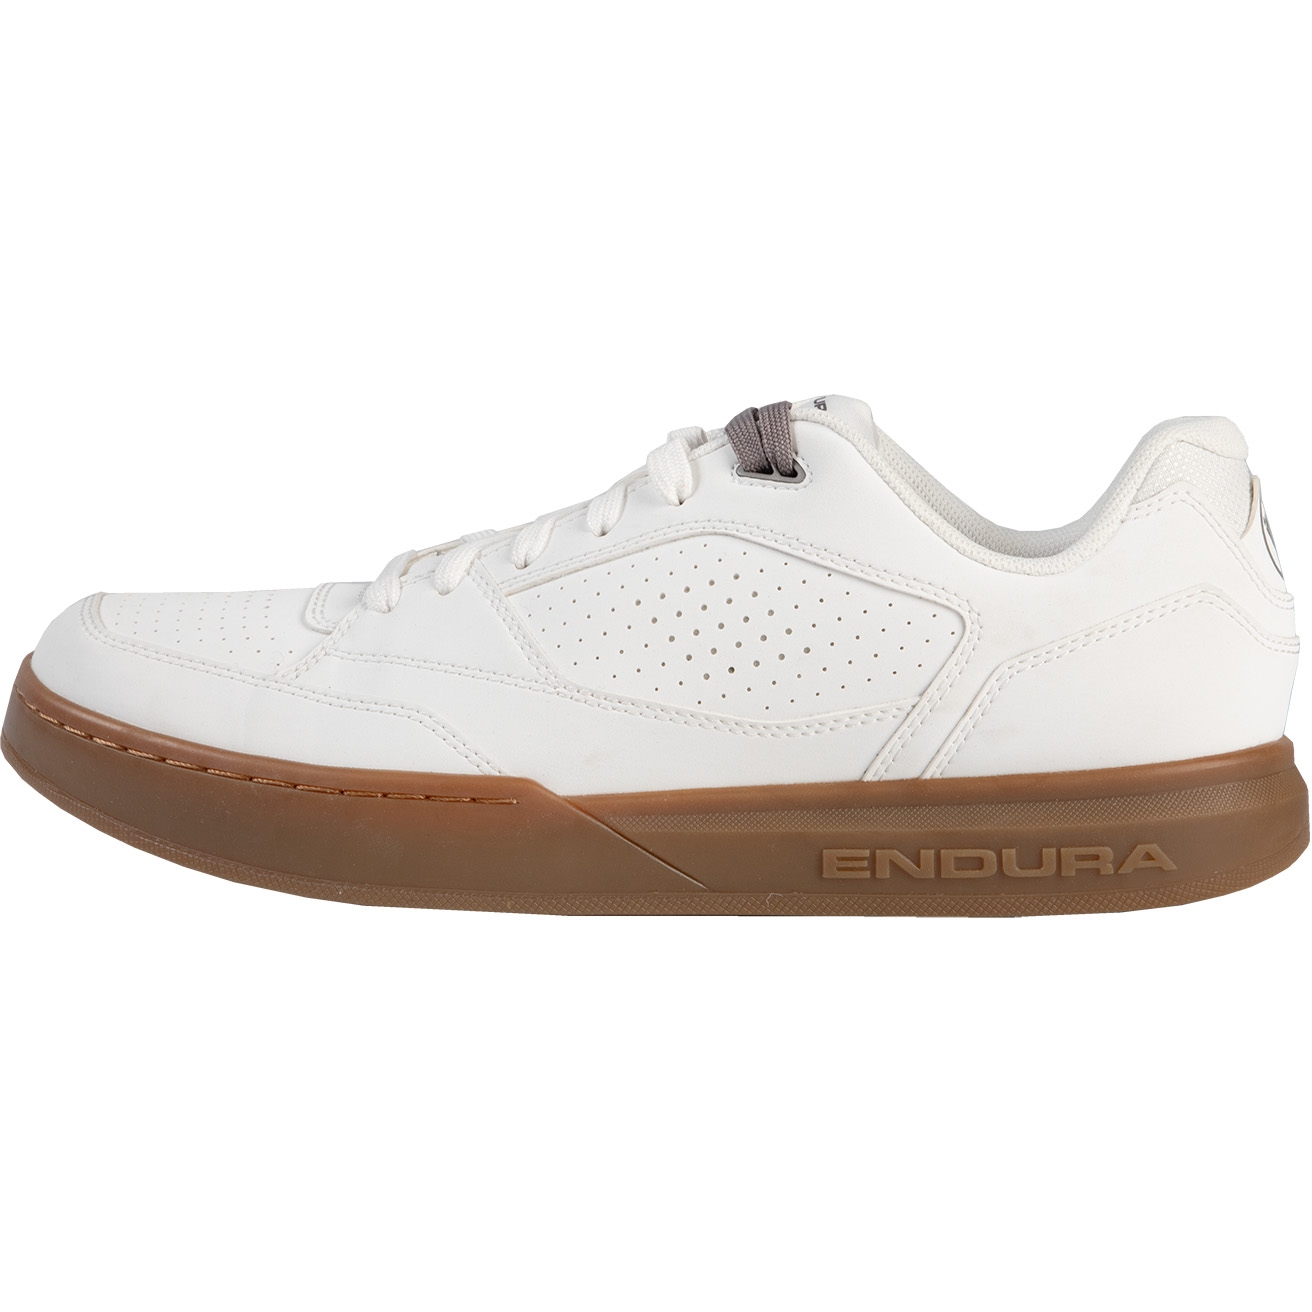 Produktbild von Endura Hummvee Flat Pedal Schuhe - weiß